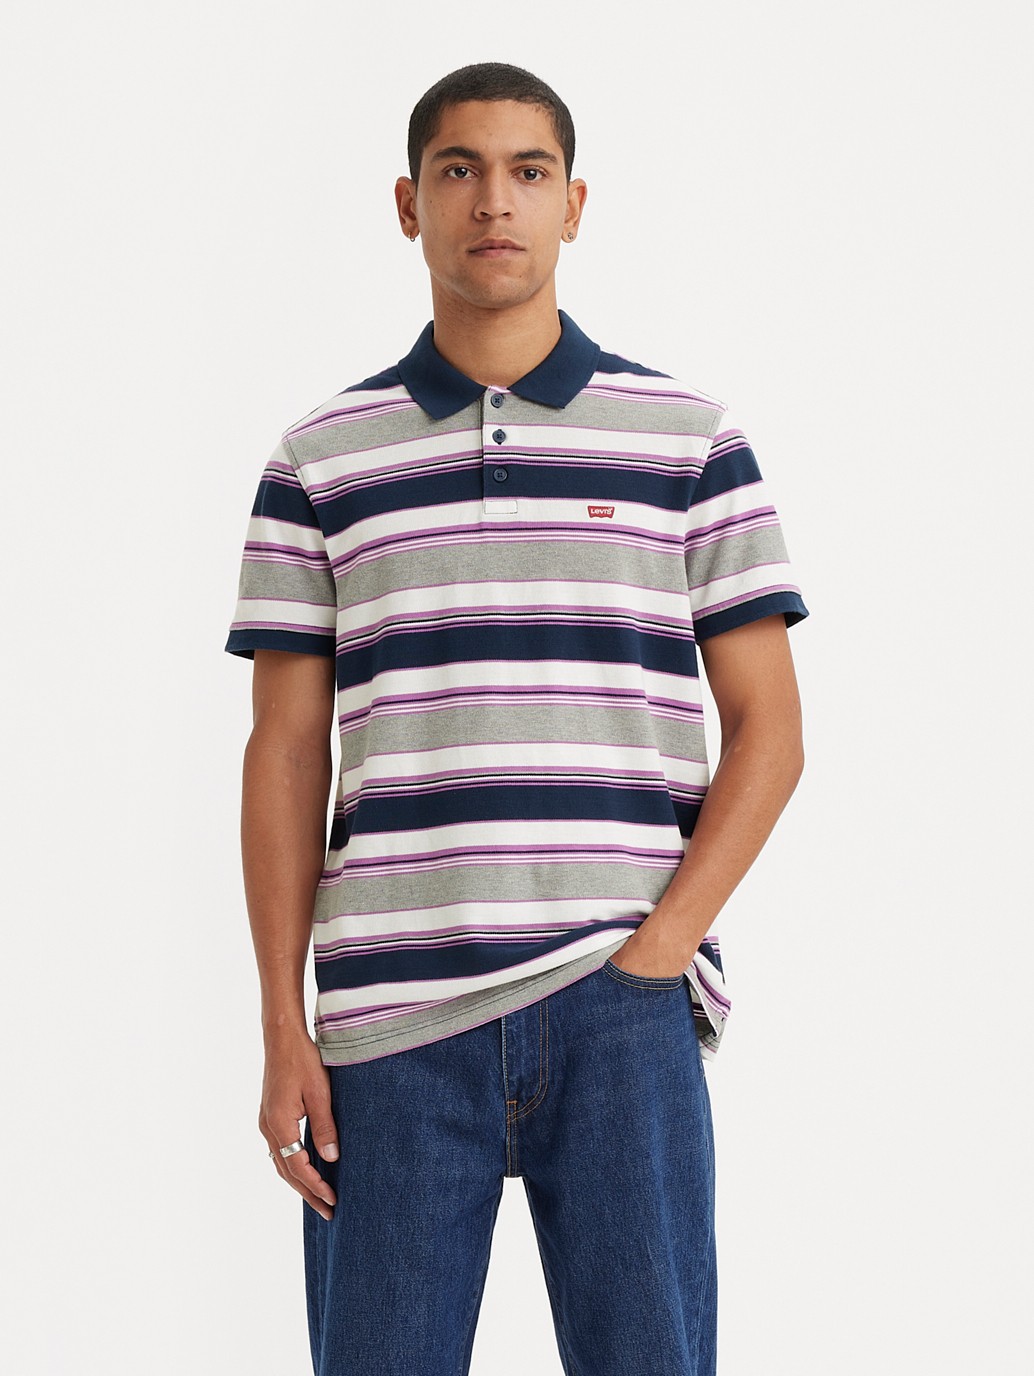 Buy Levi's® Men's Housemark Polo Shirt| Levi's® Official Online Store PH